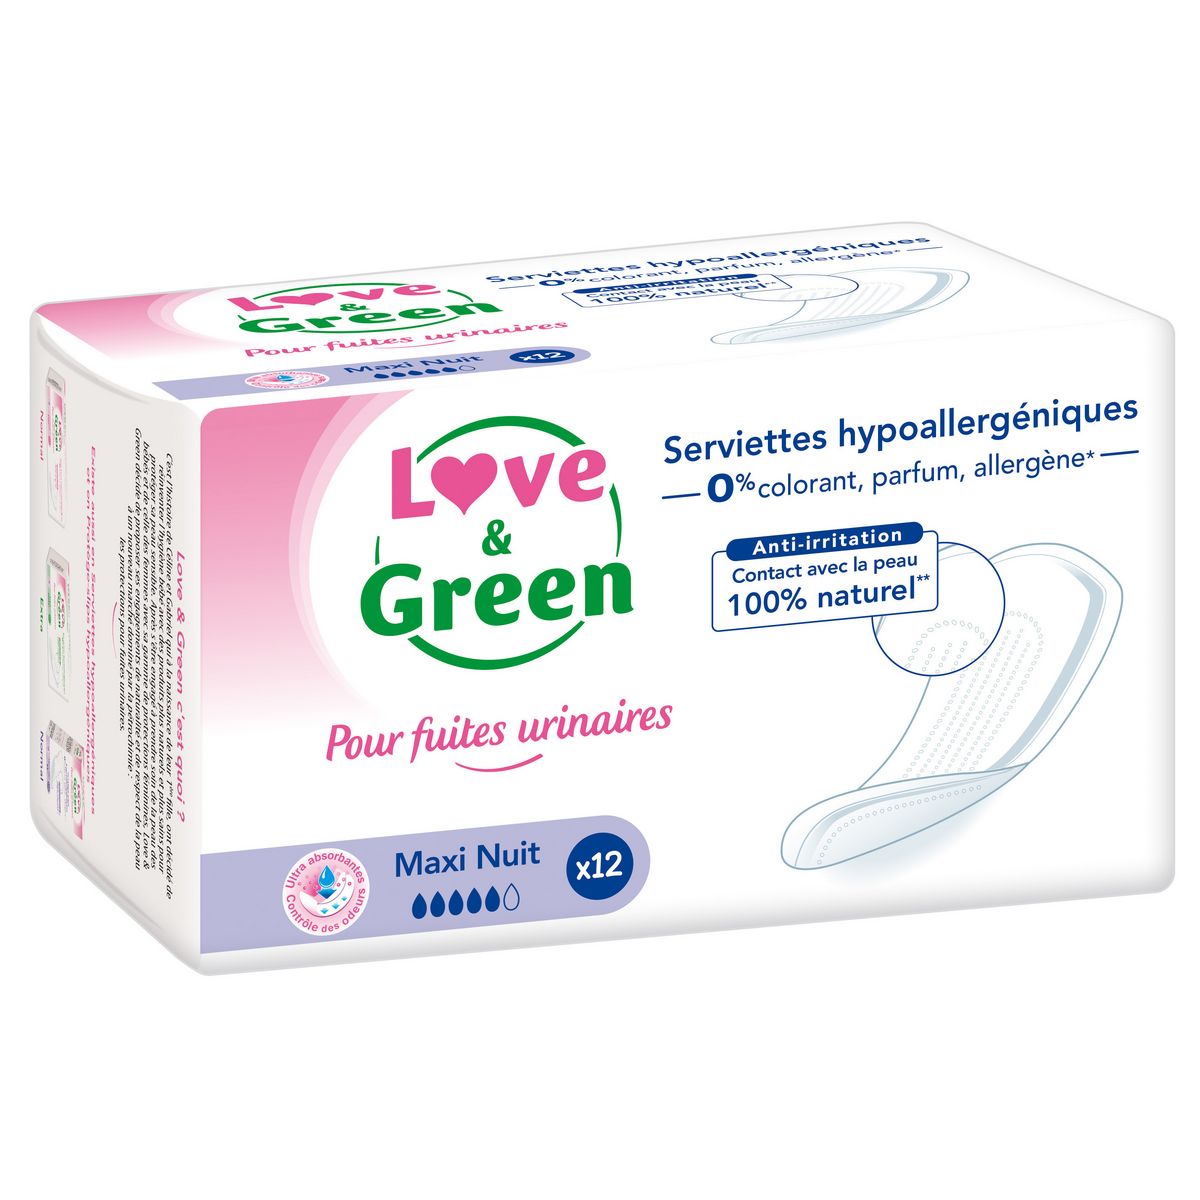 LOVE & GREEN Serviettes pour fuites urinaires hypoallergéniques maxi nuit 12 pièces